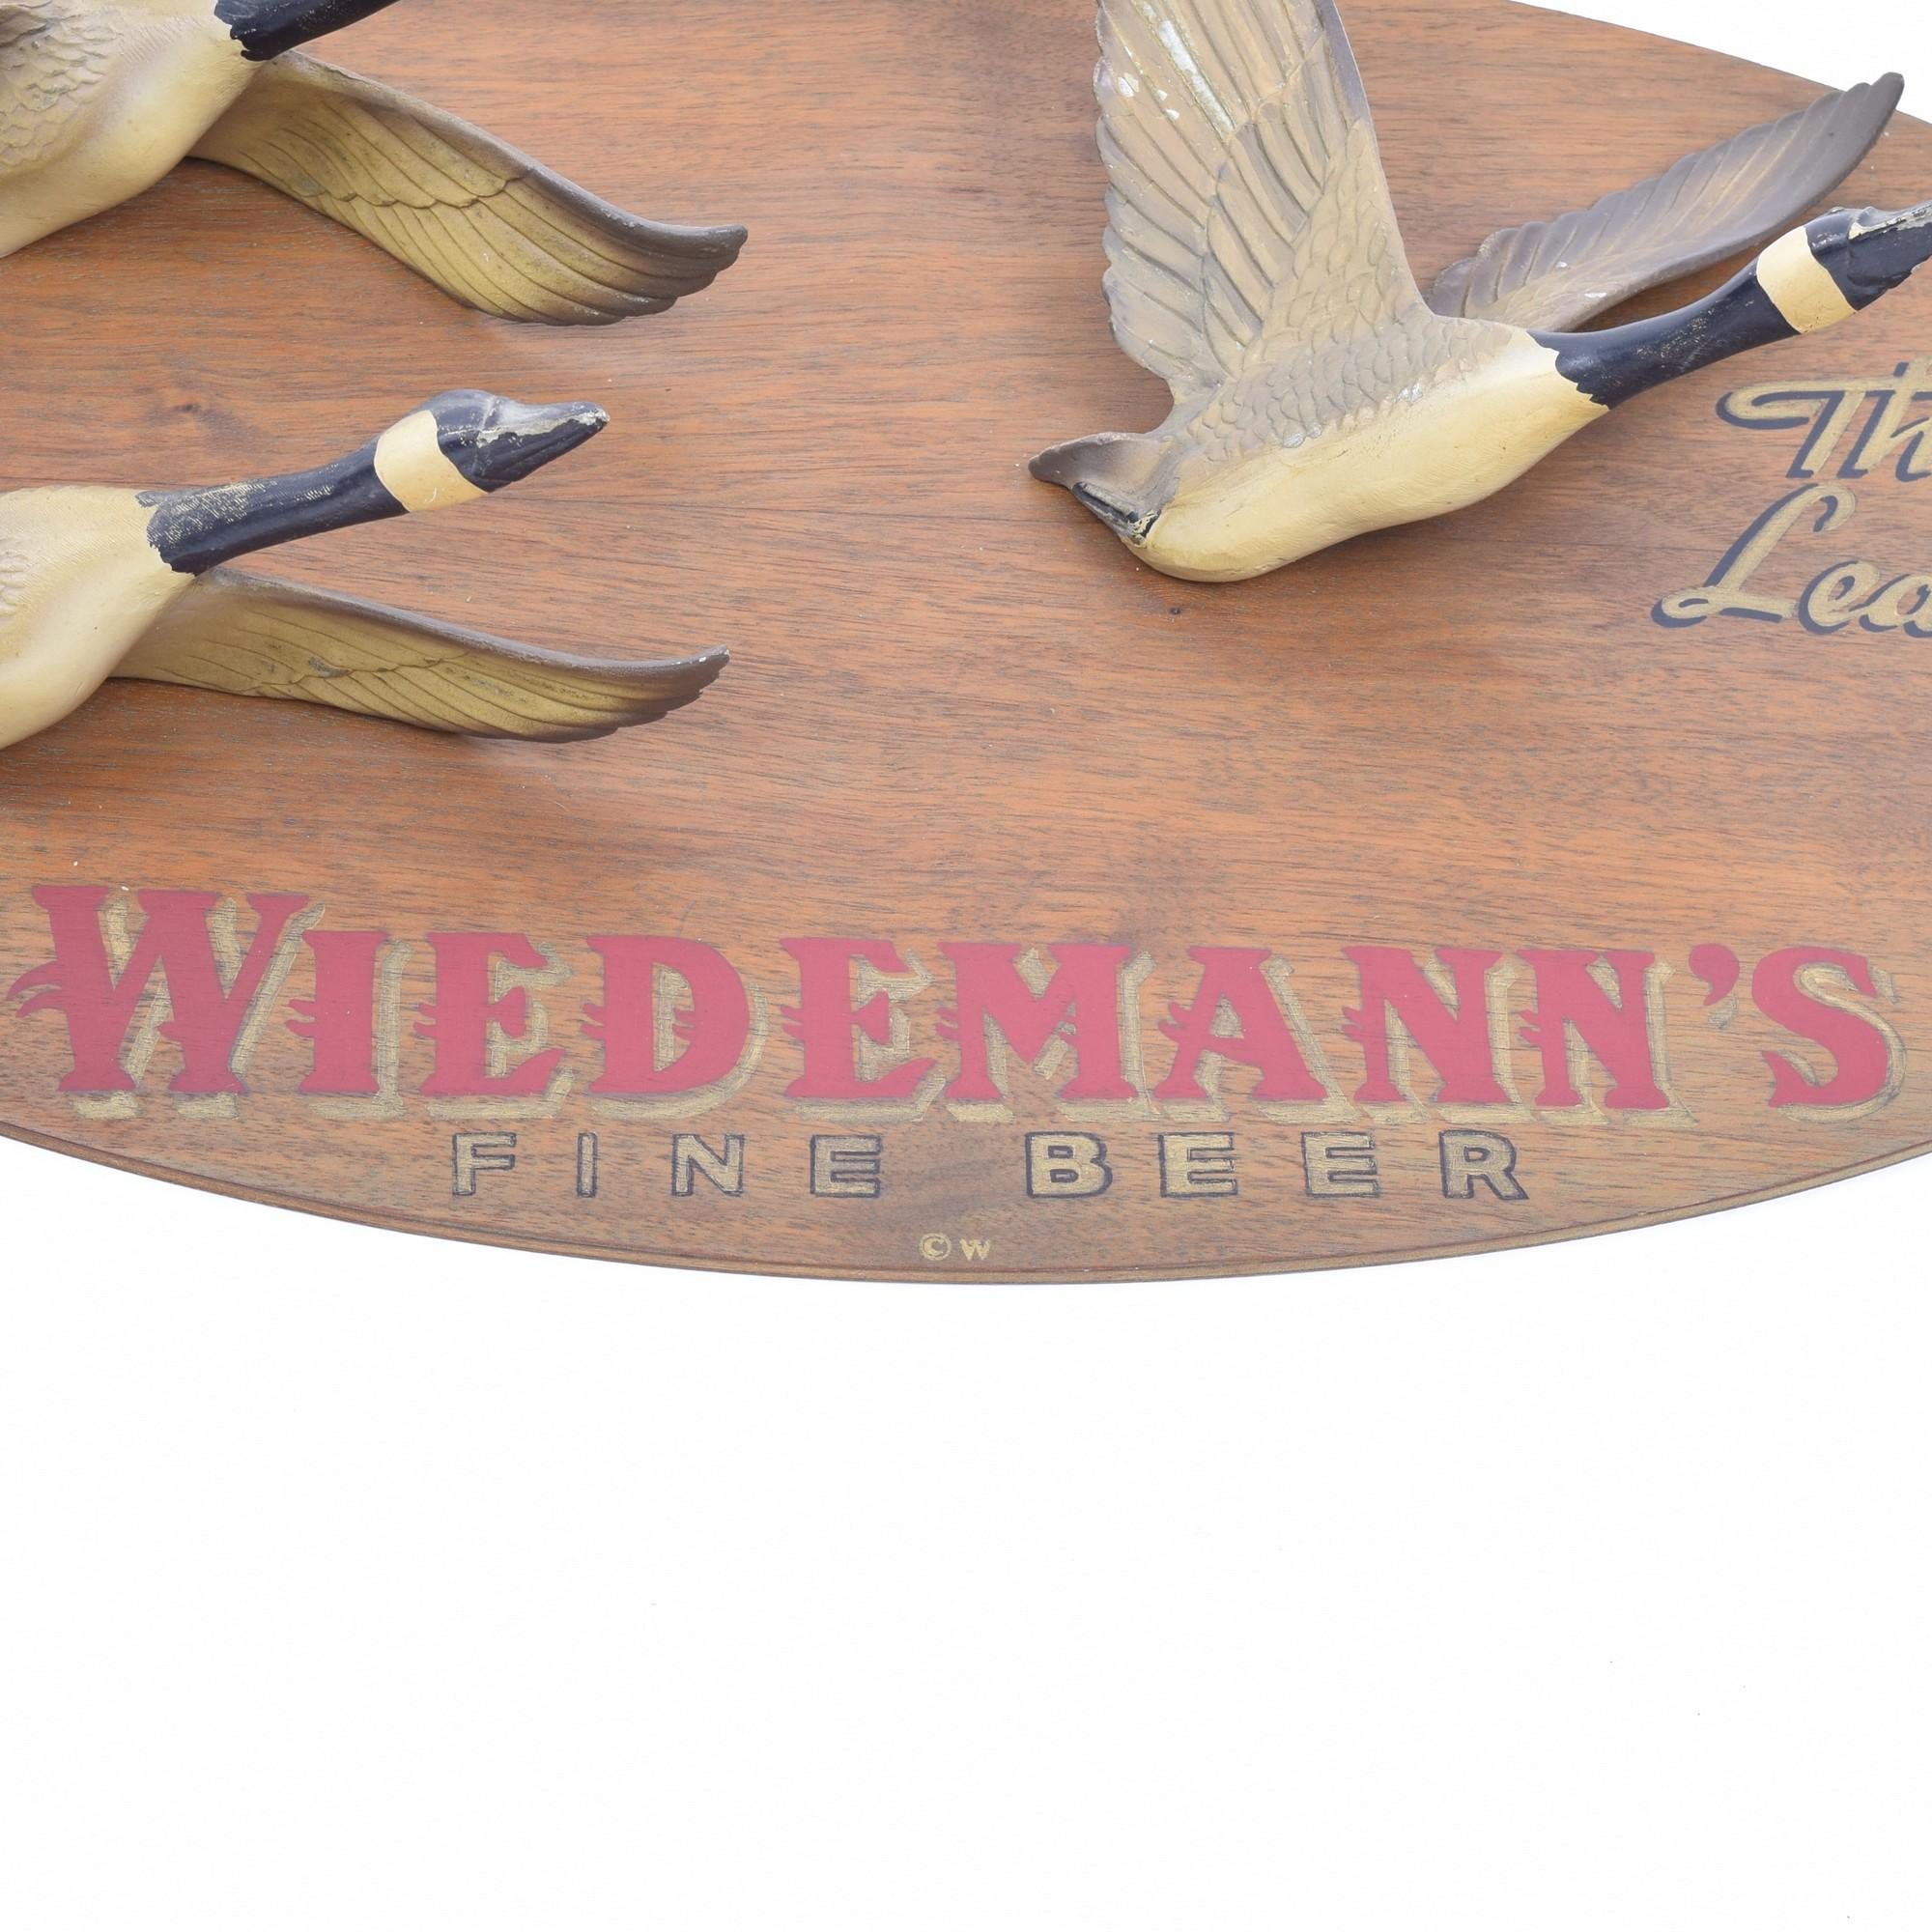 wiedemann's beer